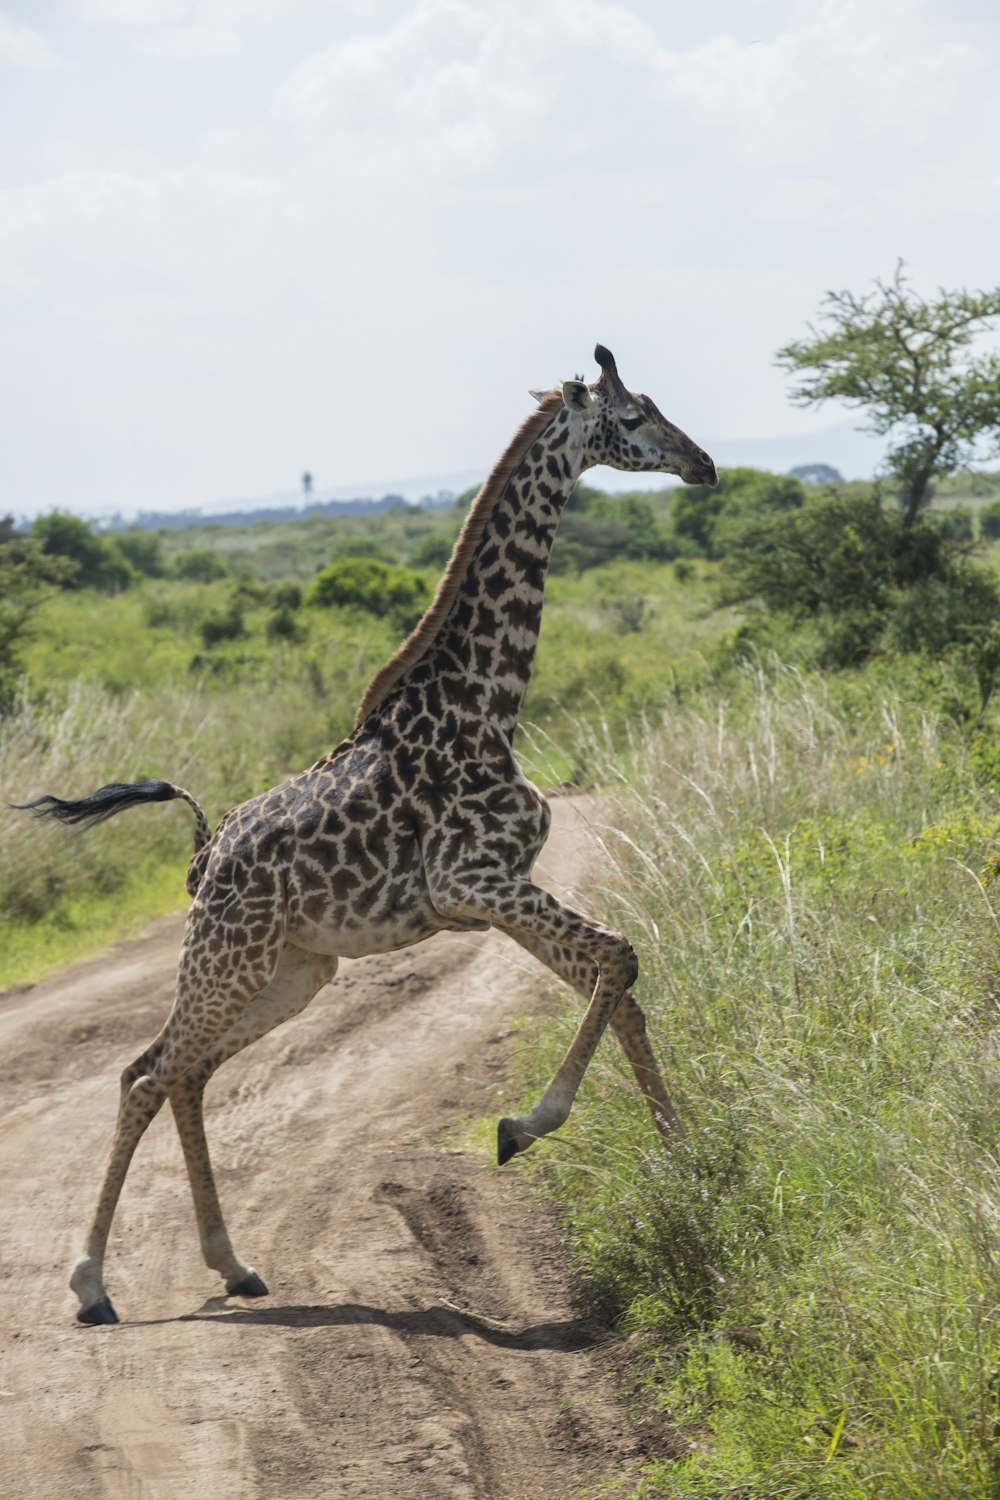 a giraffe is running across a dirt road